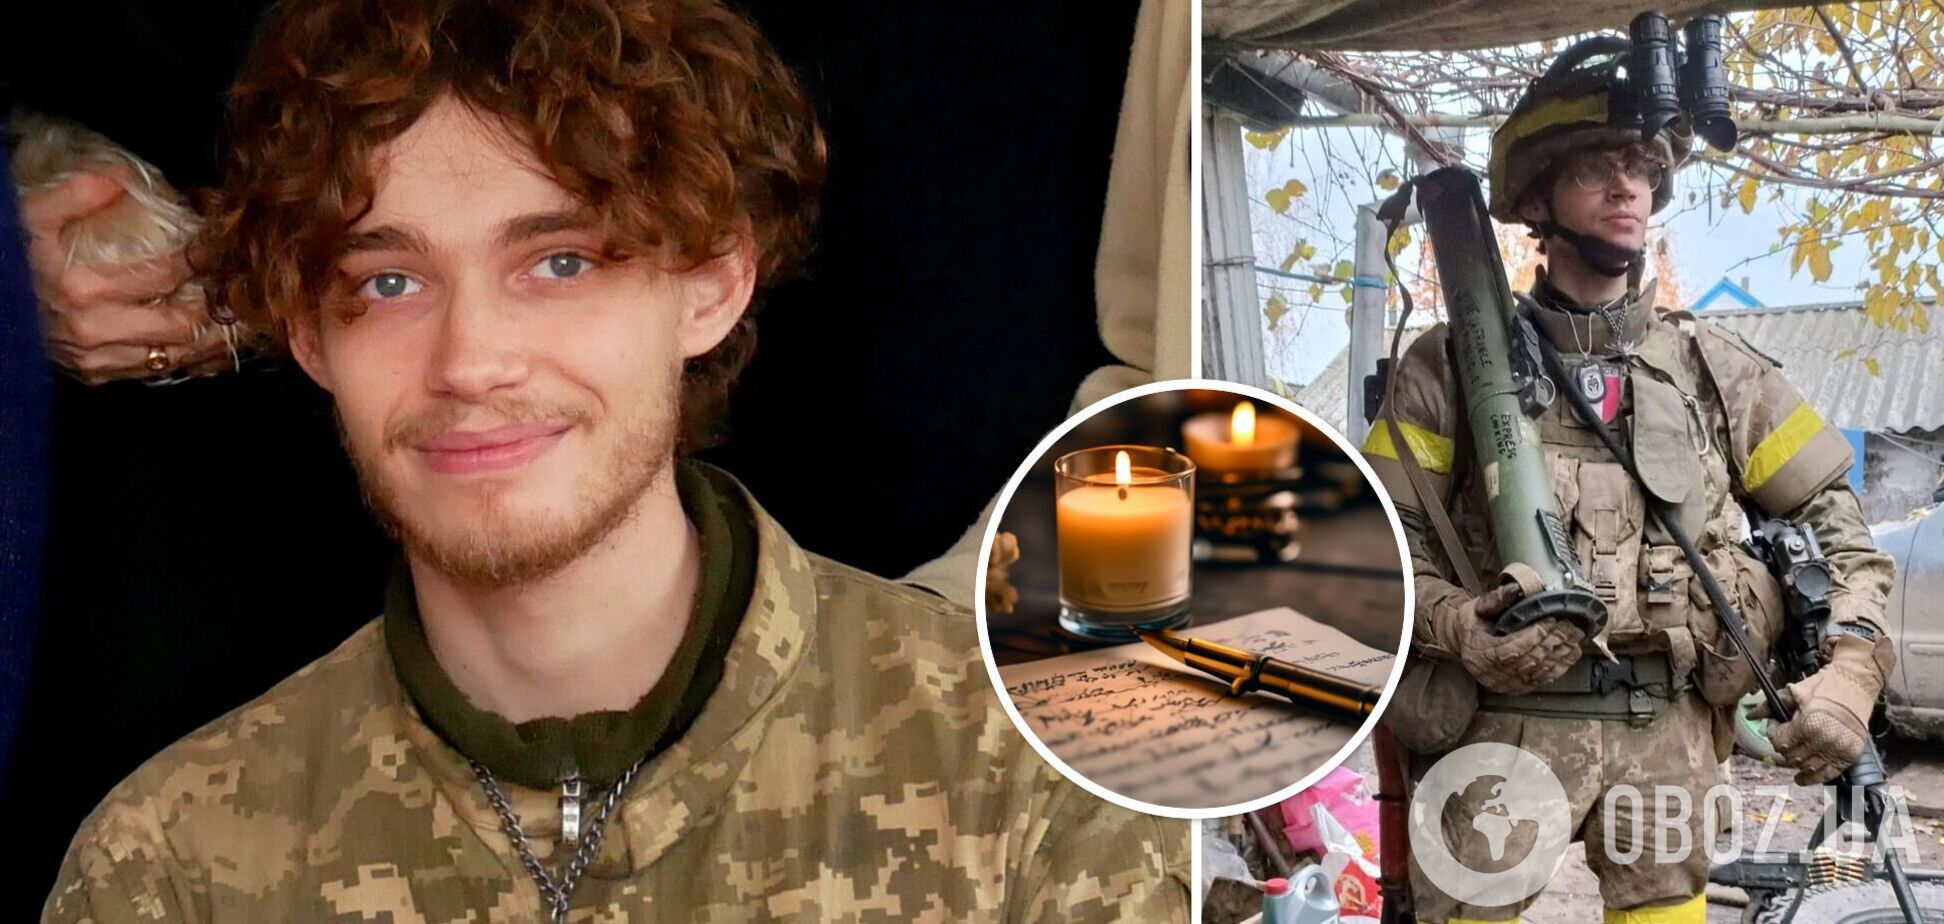 'Лише диво могло б мене врятувати': мережу вразила прощальна записка 22-річного француза, який загинув в боях за Україну. Фото